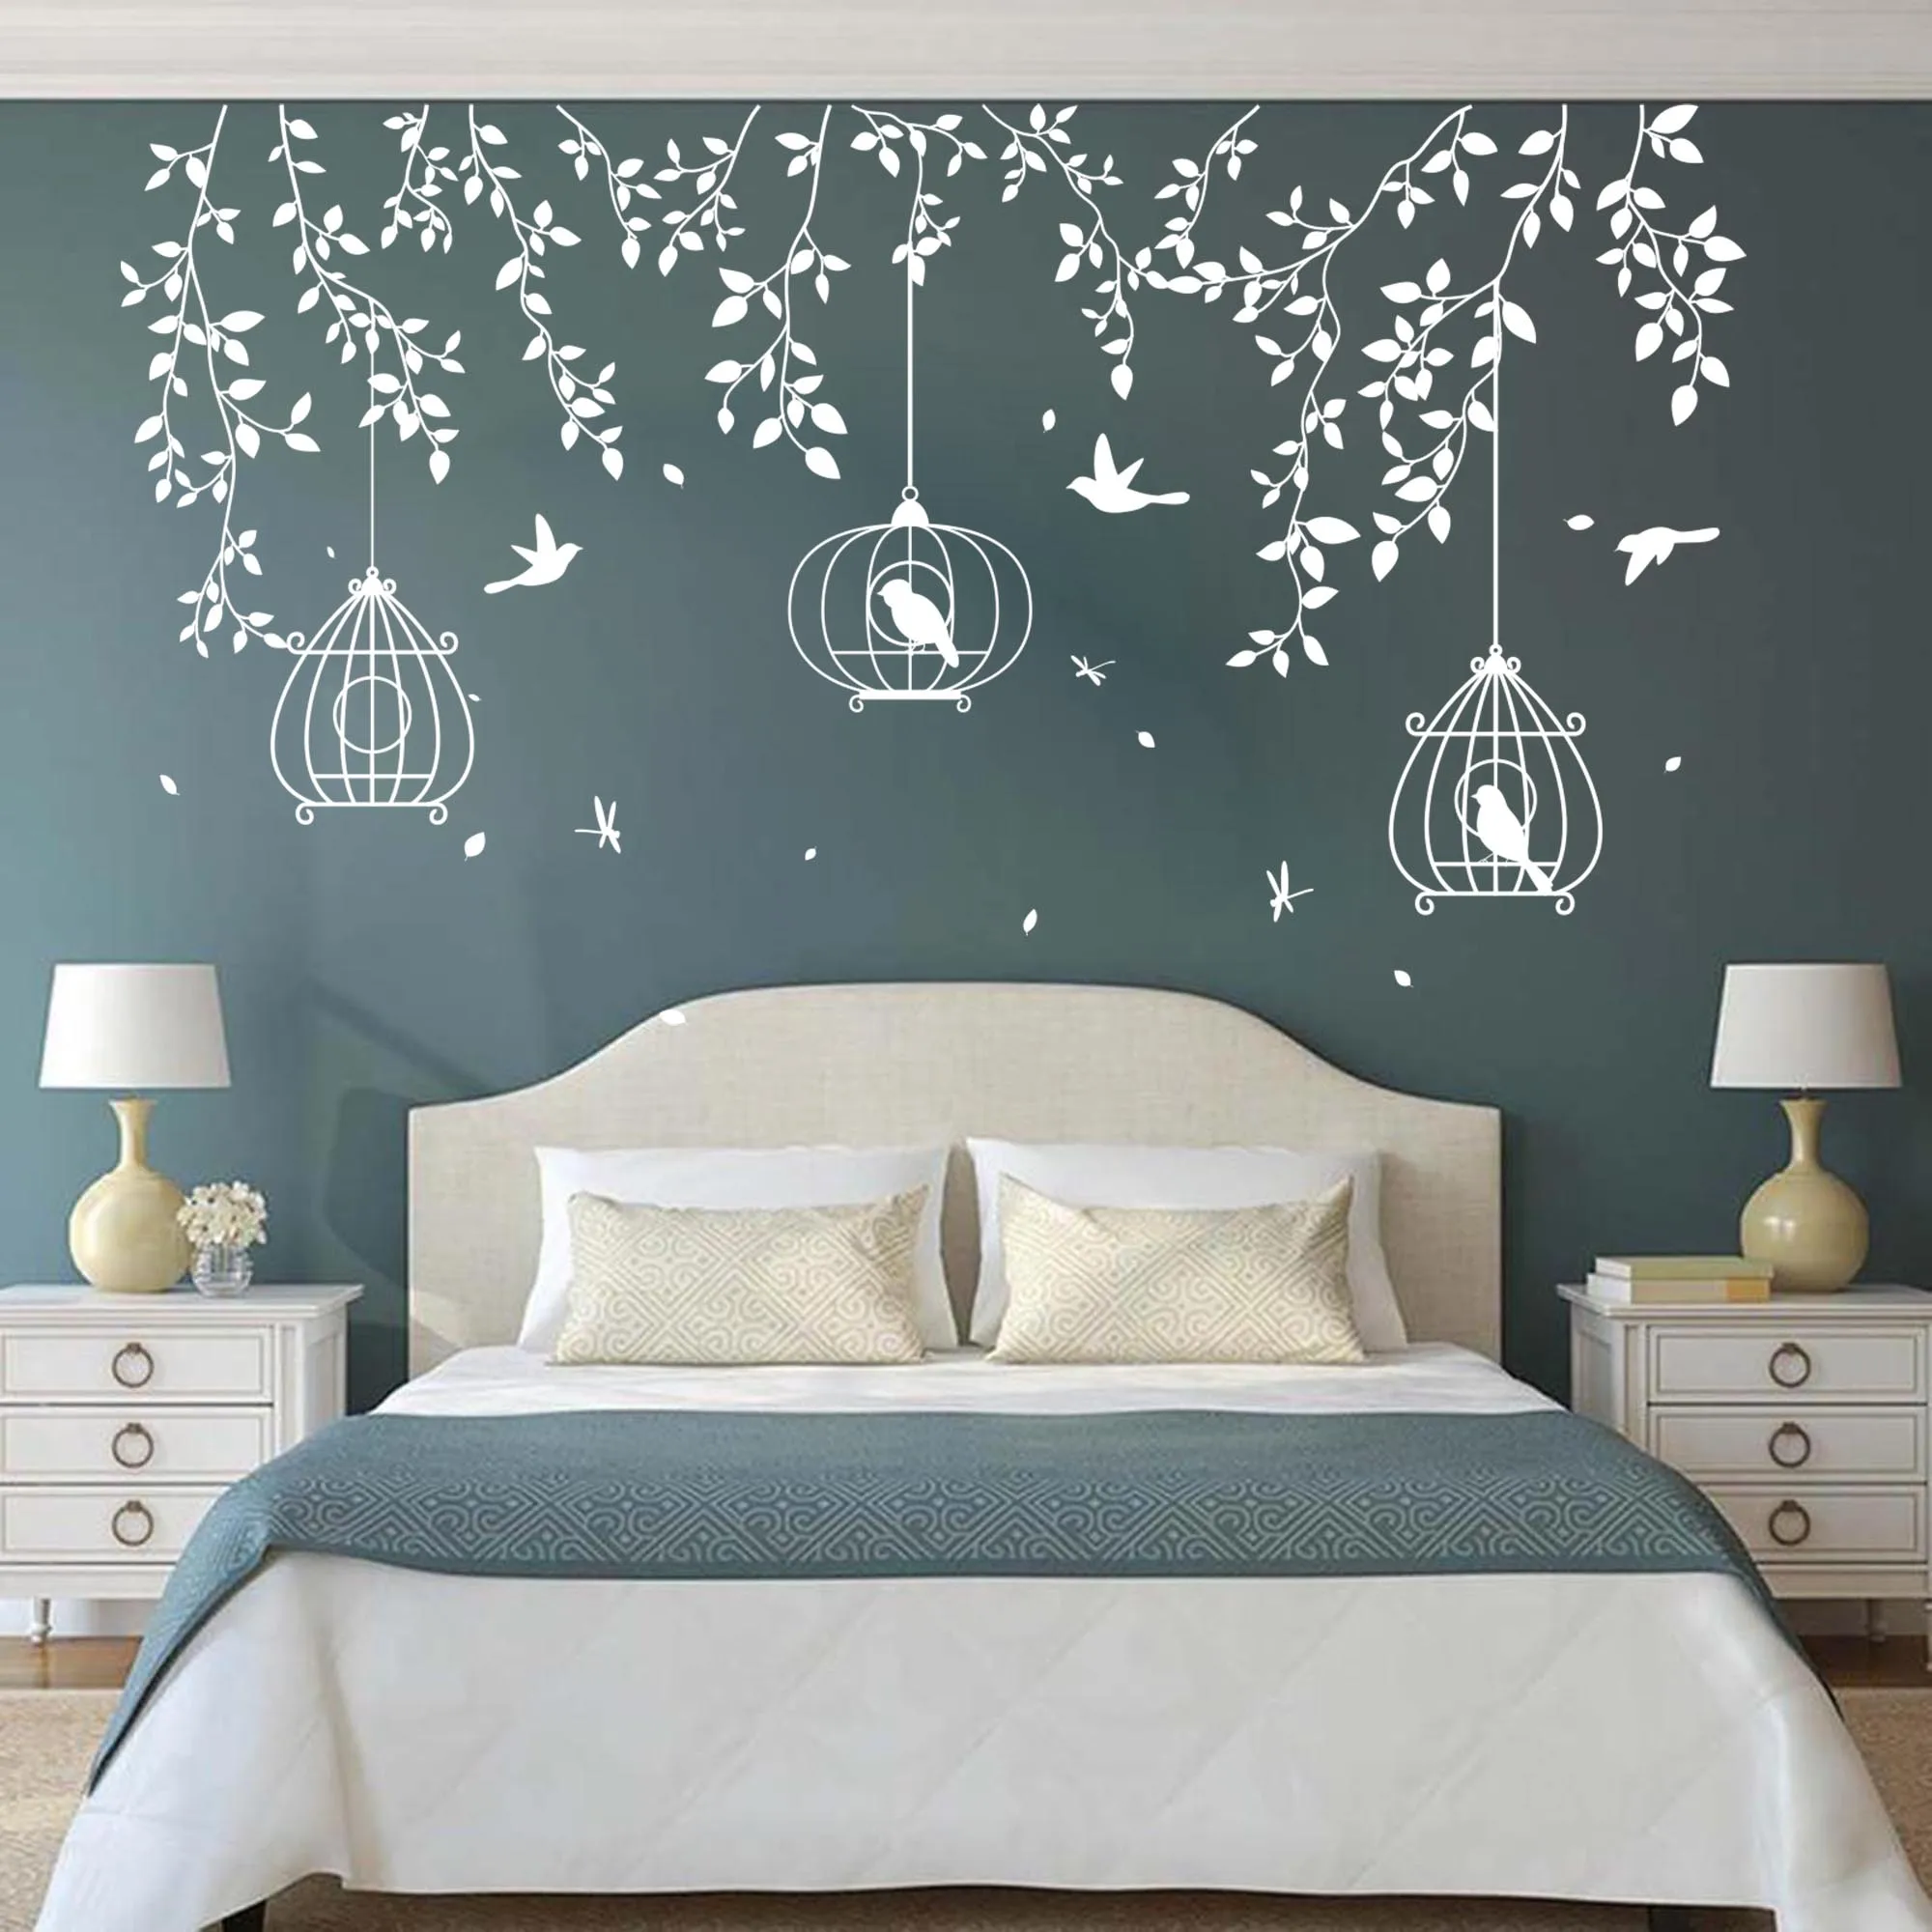 Виниловый стикер на стену большие птичья клетка дереве листья для спальни дивана